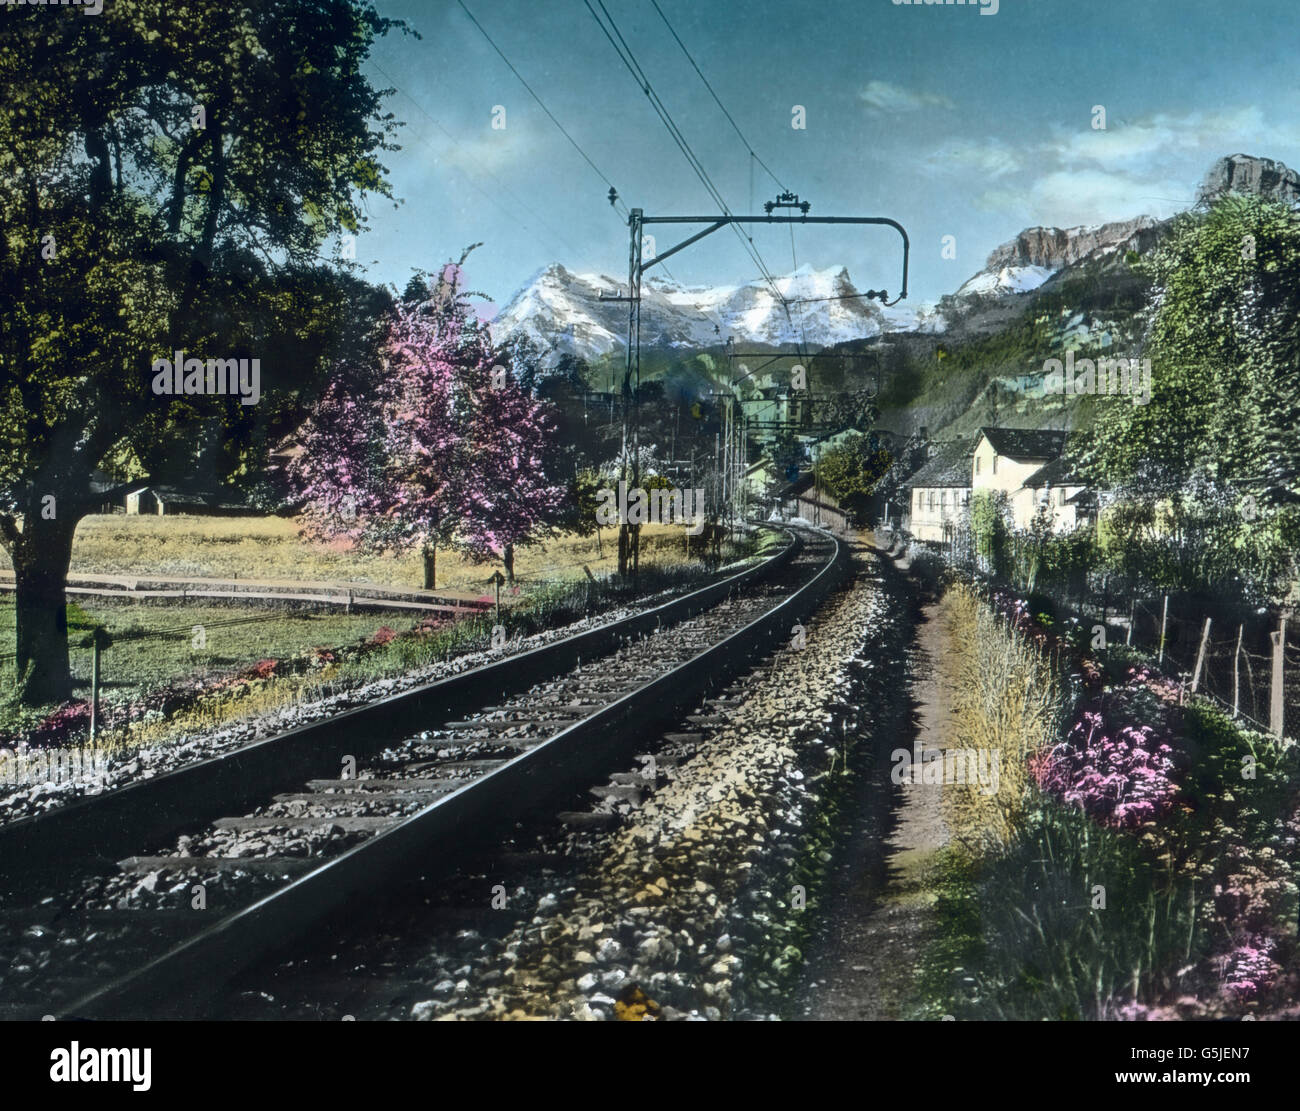 Die Gotthardstrecke bei Brunnen, Schweiz 1930er Jahre. Gotthard railway track near Brunnen, Switzerland 1930s. Stock Photo